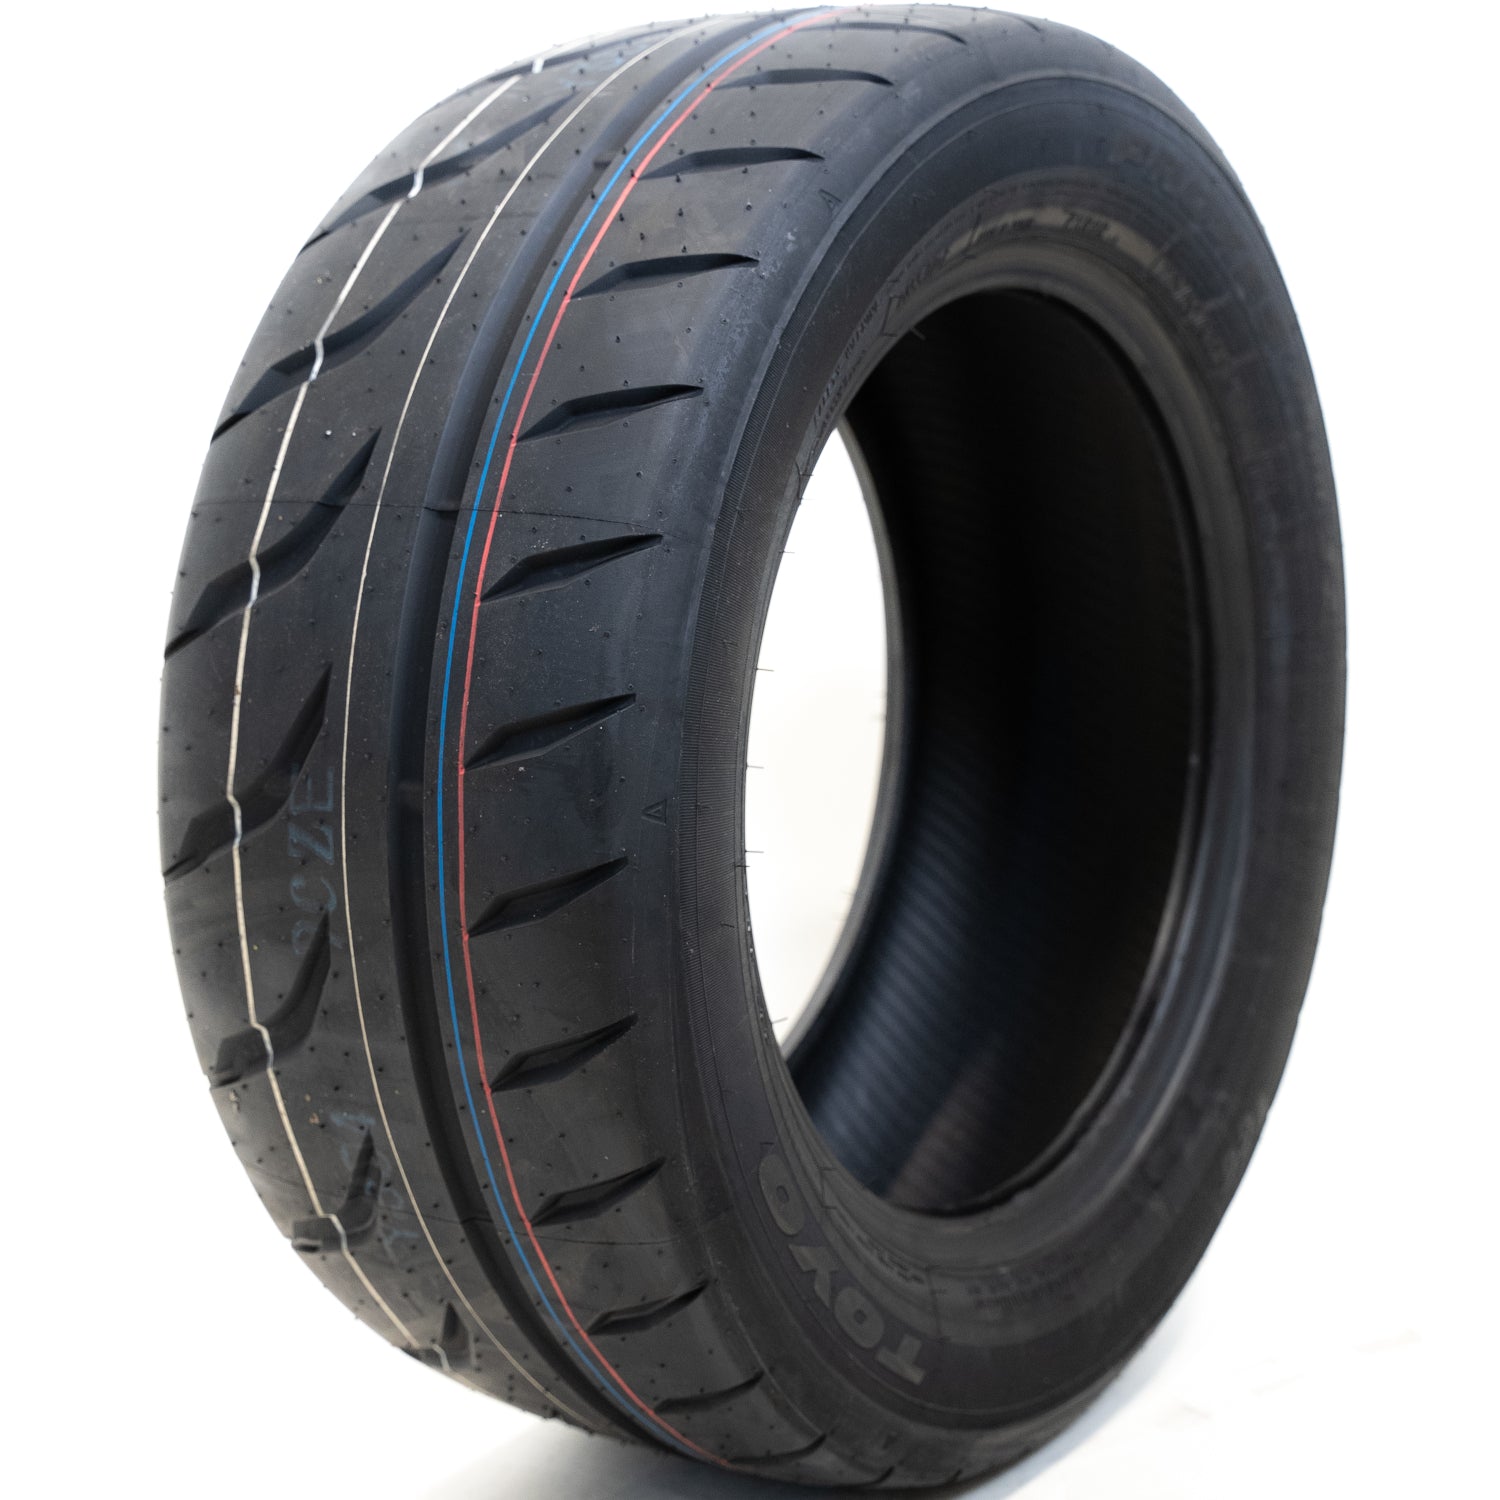 TOYO TIRES PROXES R888R 205/45R16XL (23.2X8.1R 16) Tires